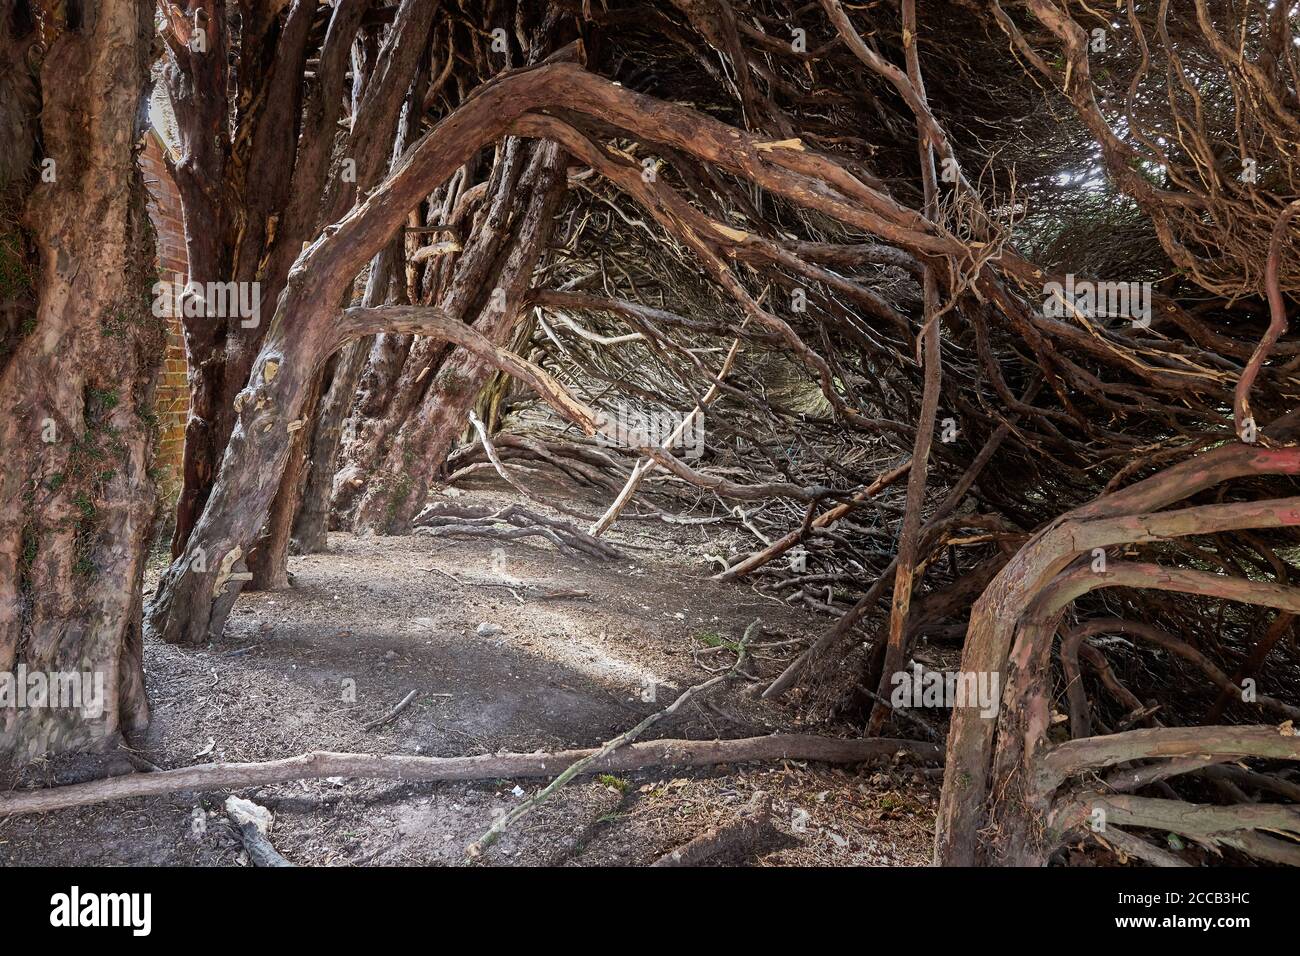 vista a través del interior de una gran cobertura de tejo viejo Mostrando los torcidos troncos de Taxus baccata y las ramas que se forman un pasaje como un túnel místico Foto de stock